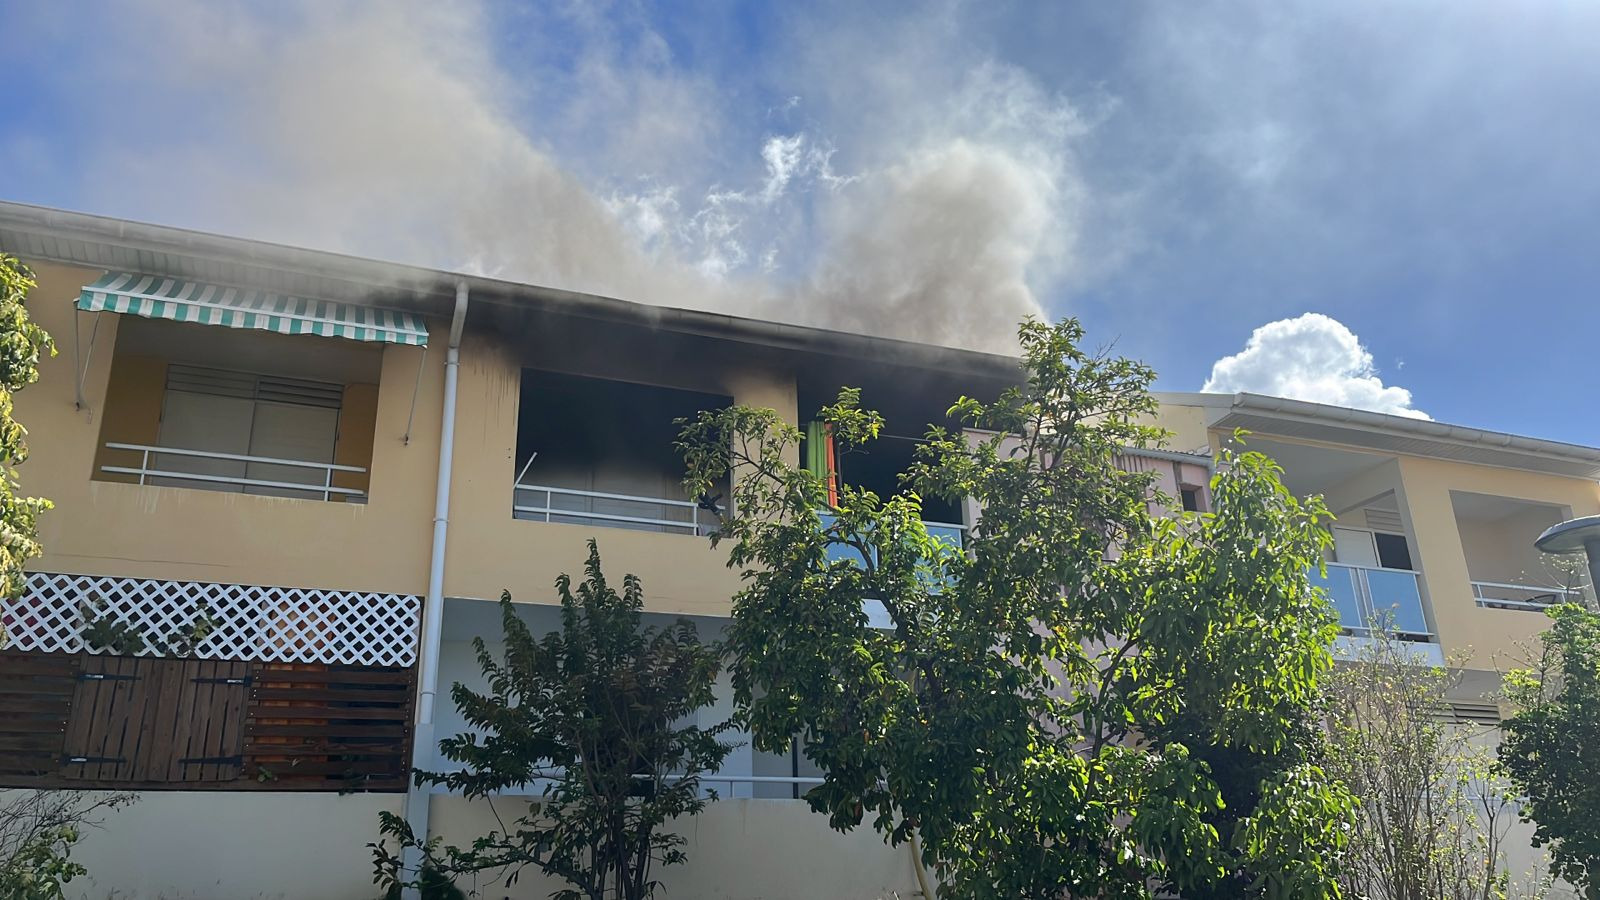     Une femme secourue dans un feu d'habitation à Gourbeyre

